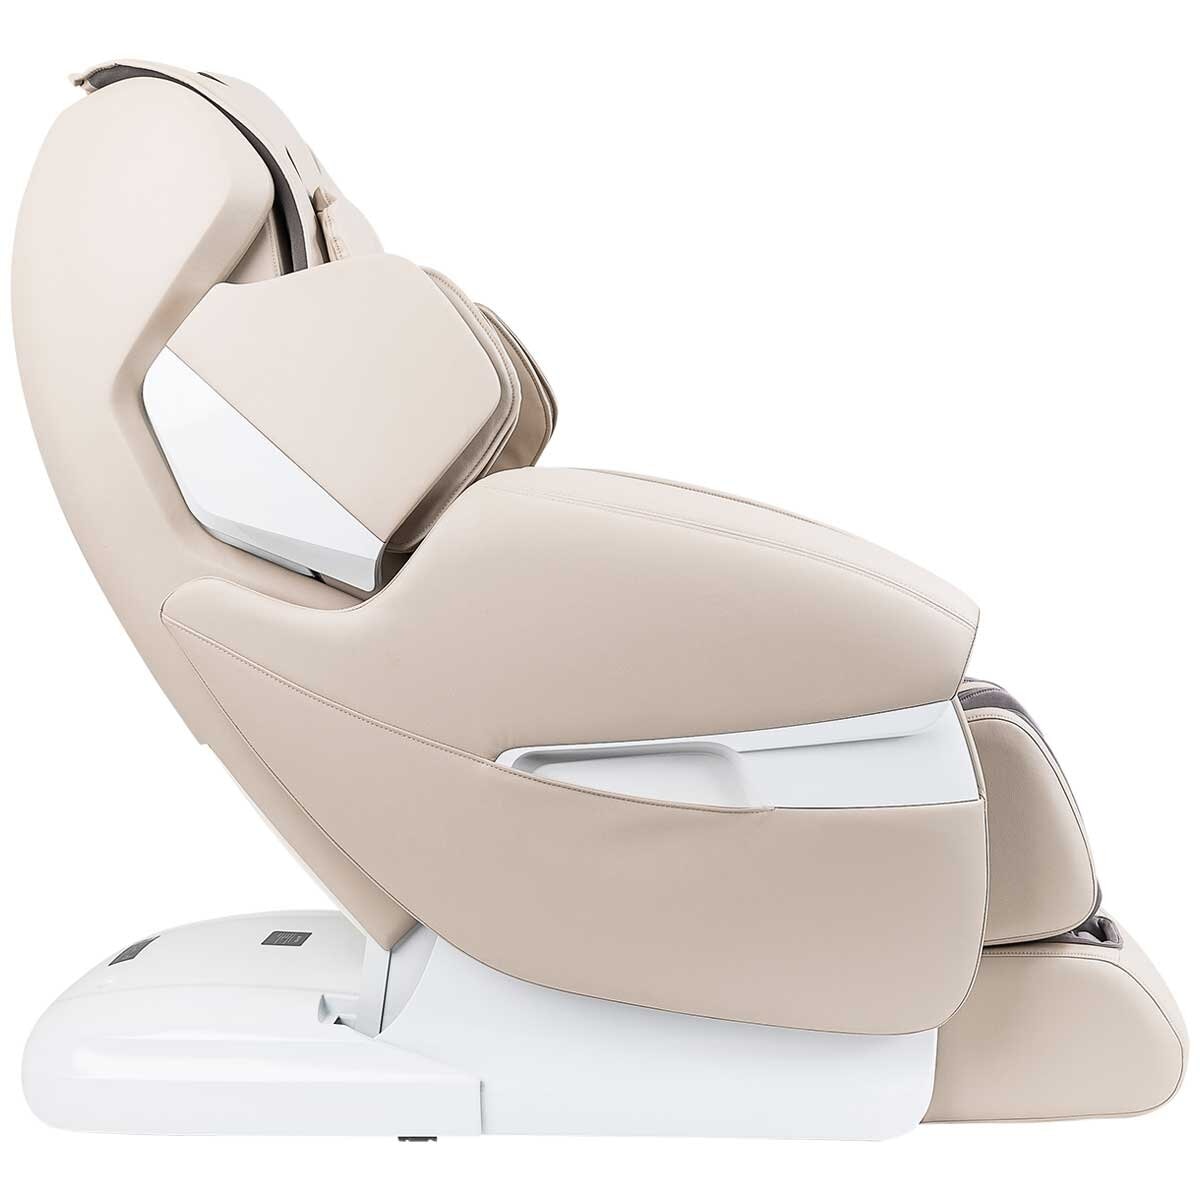 Masseuse Massage Chairs Platinum Health Massage Chair Beige